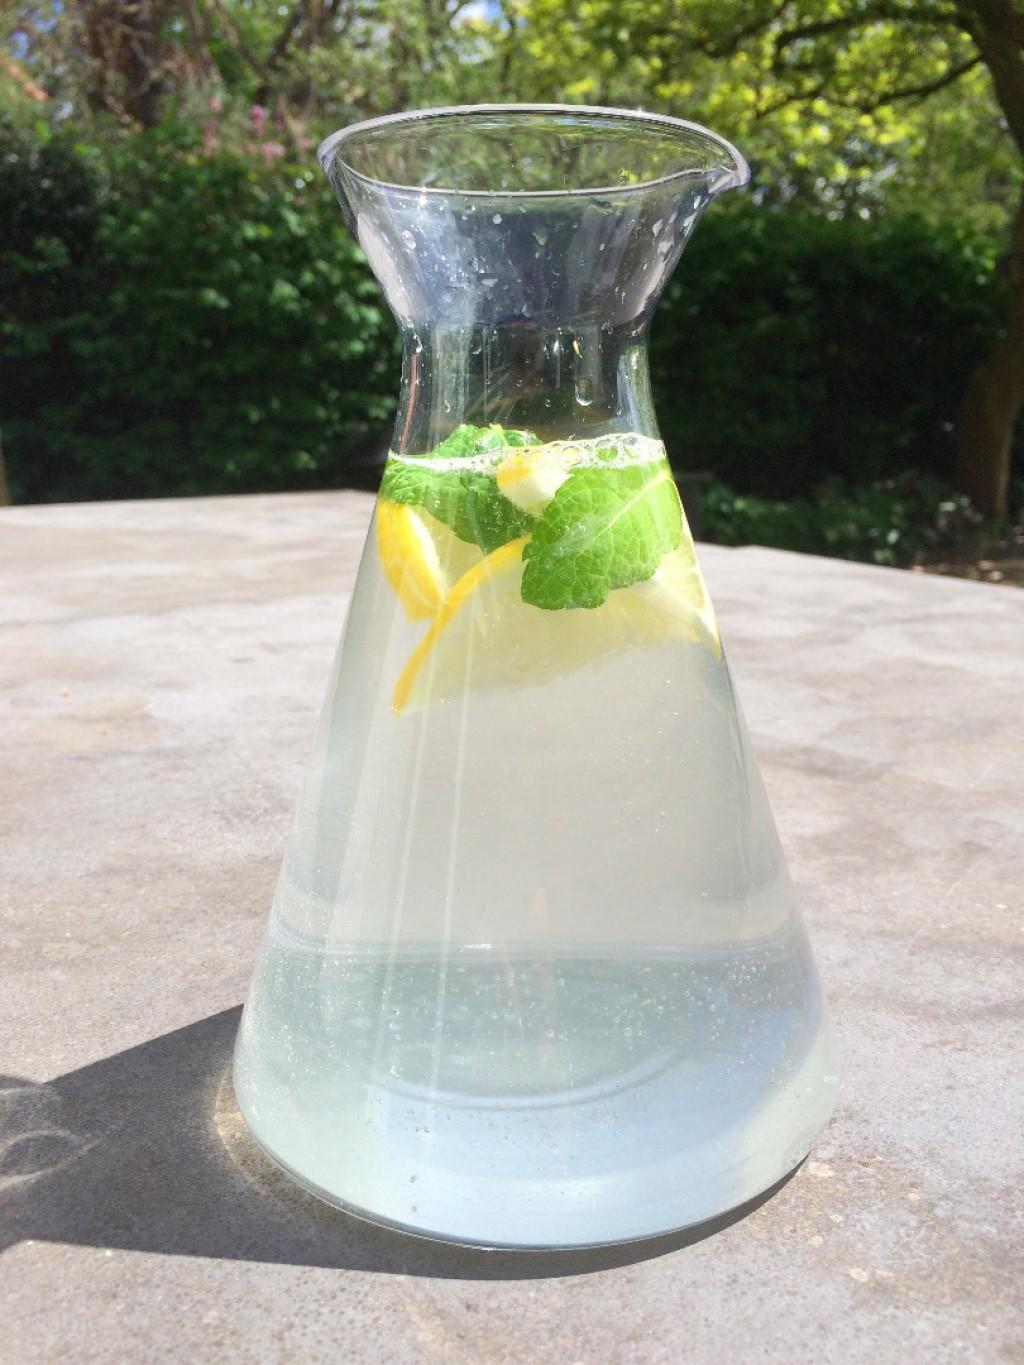 Goot Experiment bereik Vrolijk verfrissend water - Online Recepten - KookJij